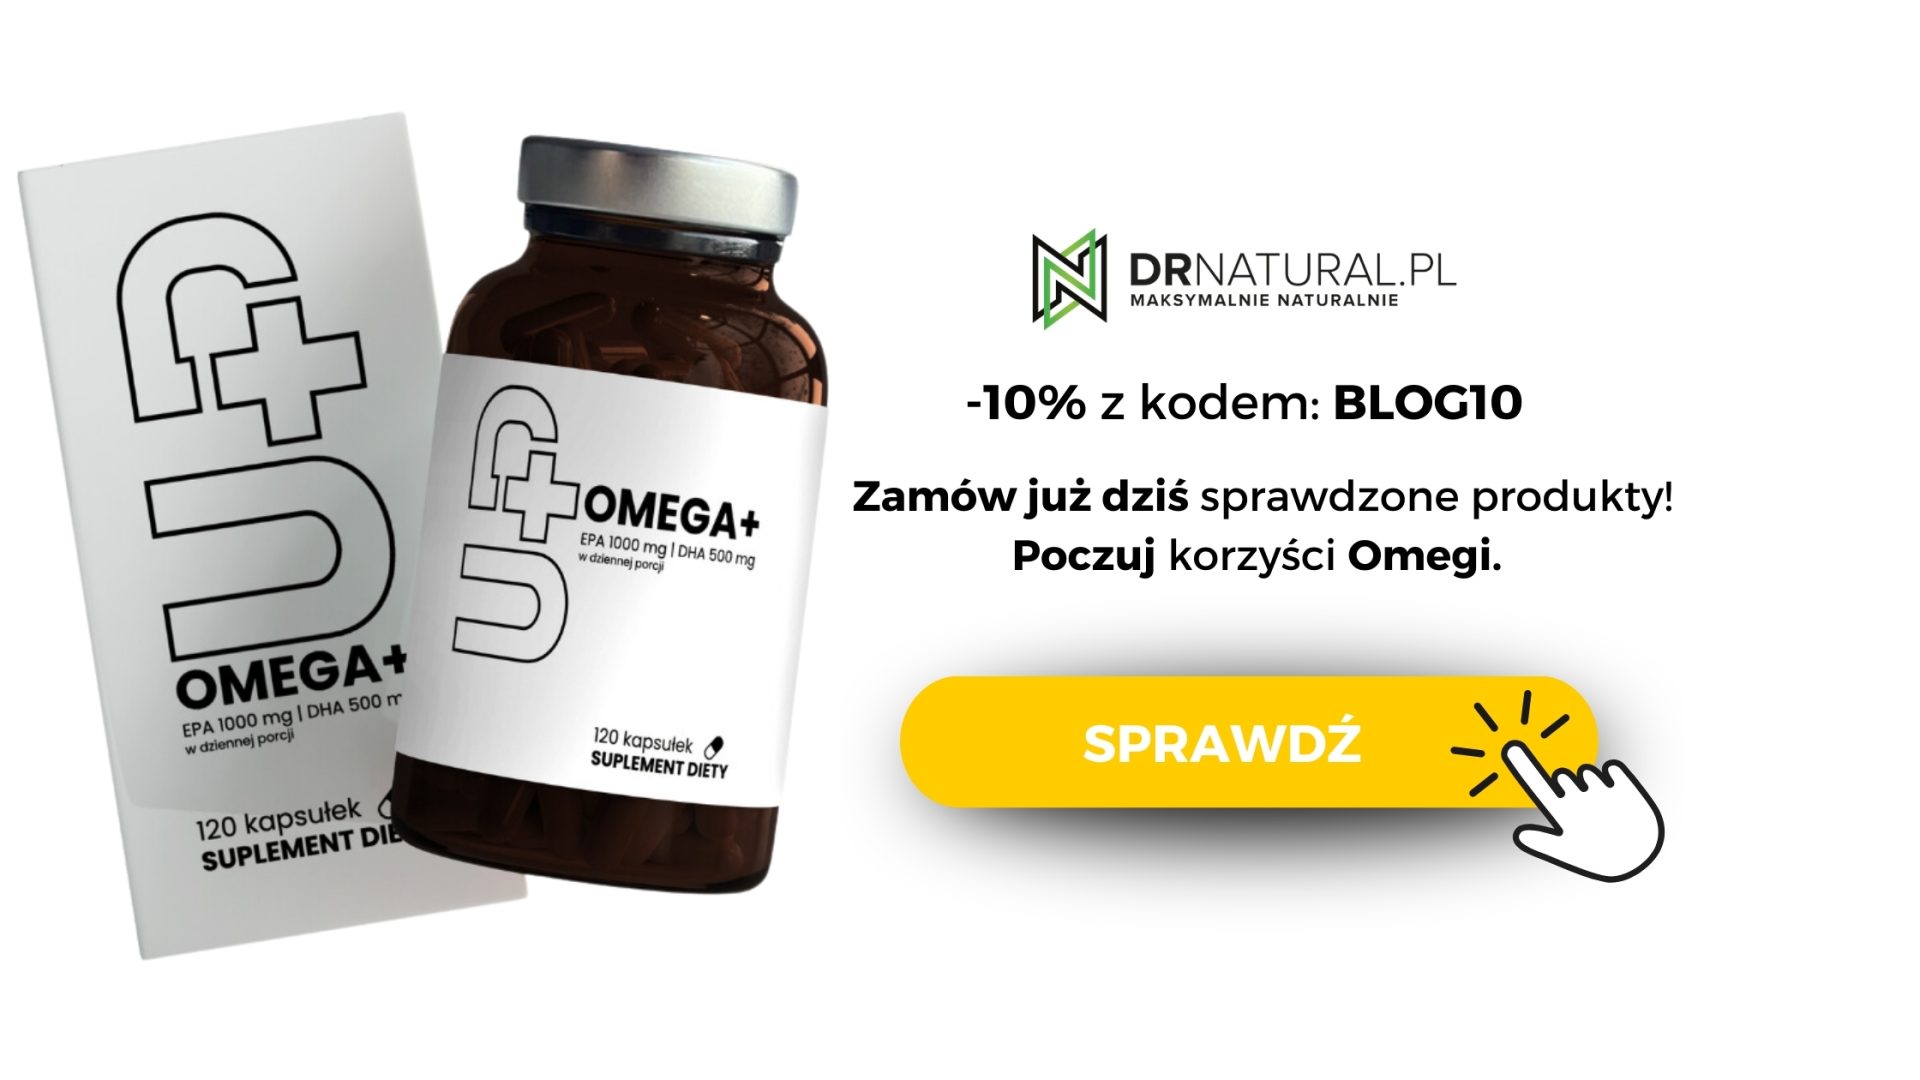 Butelka suplementu UP - Omega+, z 10% kodem rabatowym BLOG10 - zamów już dziś na drnatural.pl i poczuj korzyści Omegi. Przycisk pomarańczowy z napisem "sprawdź" i ikona klikania myszką